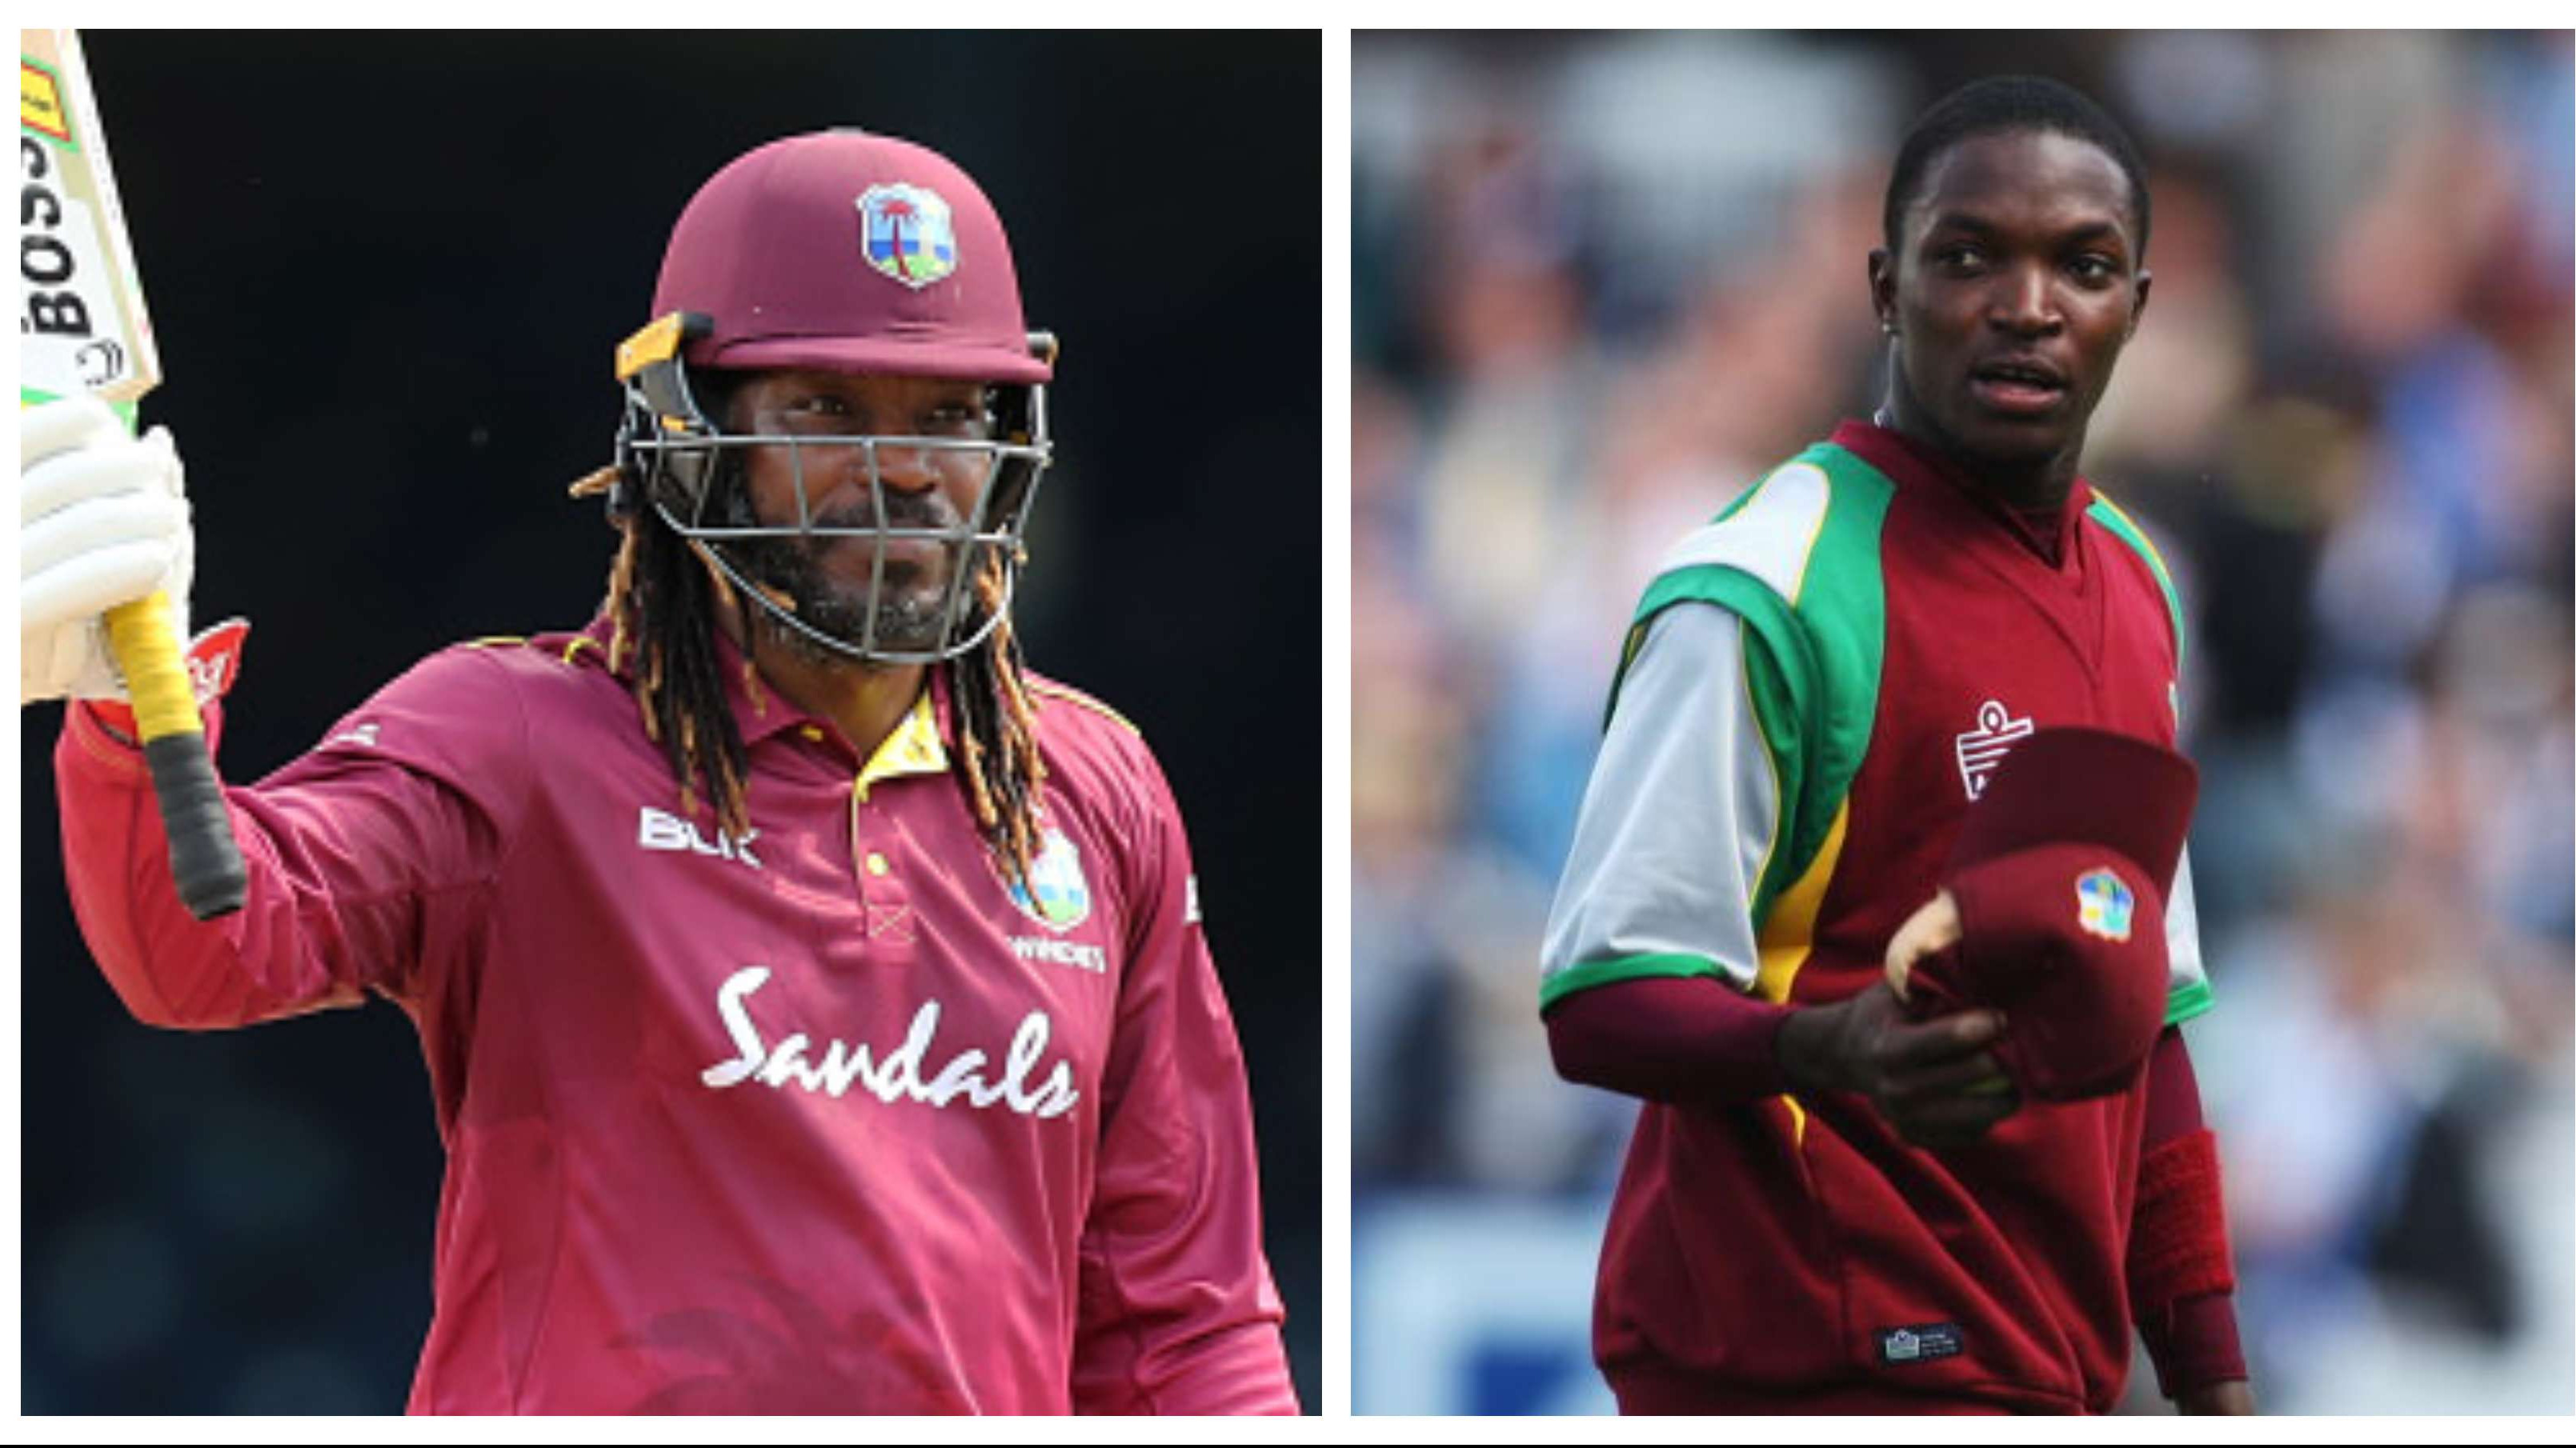 WI v SL 2021: Chris Gayle, Fidel Edwards return to West Indies squad for T20I series against Sri Lanka